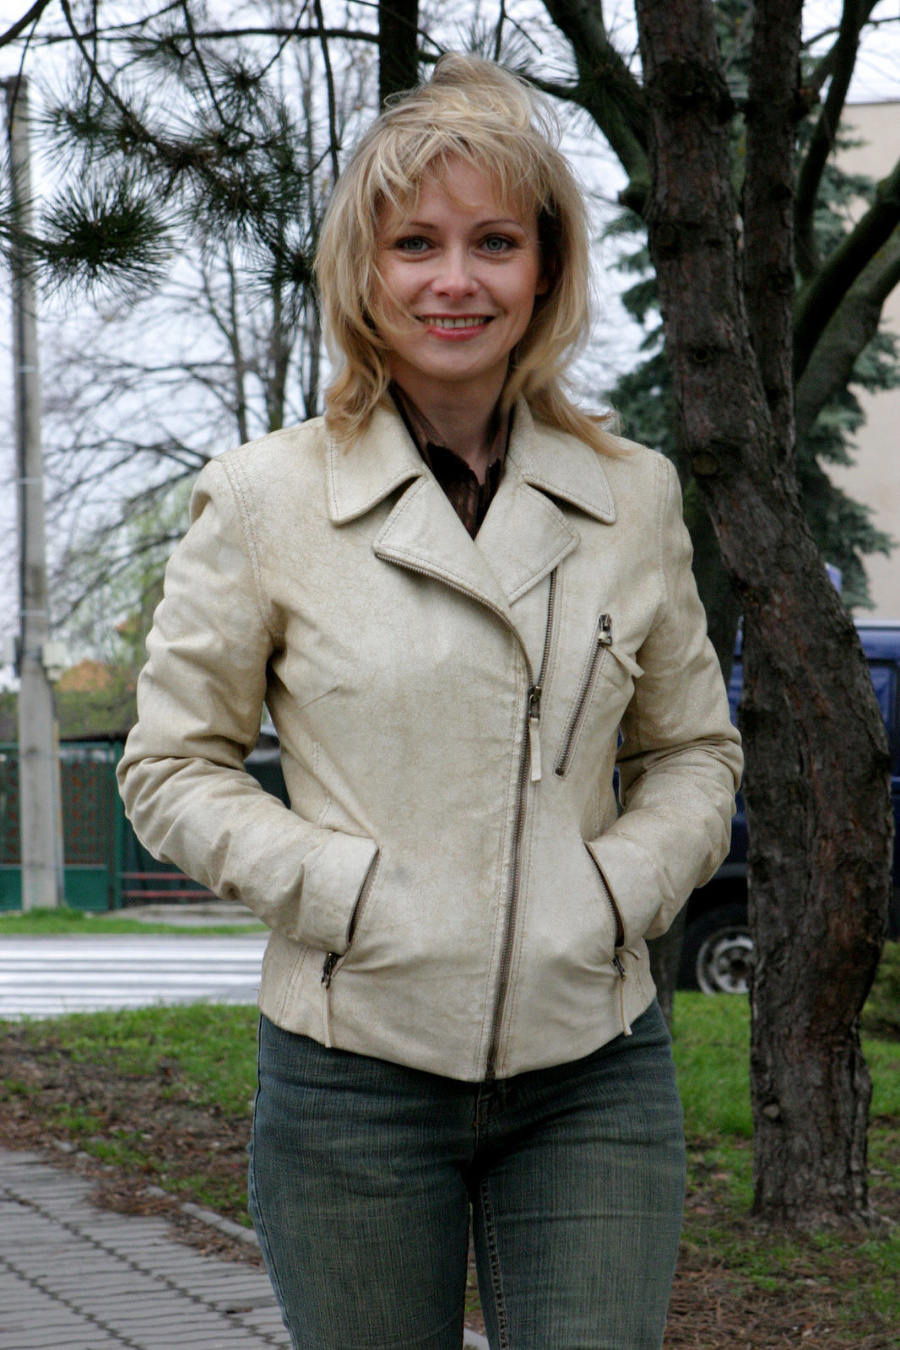 Zuzana Skopálová